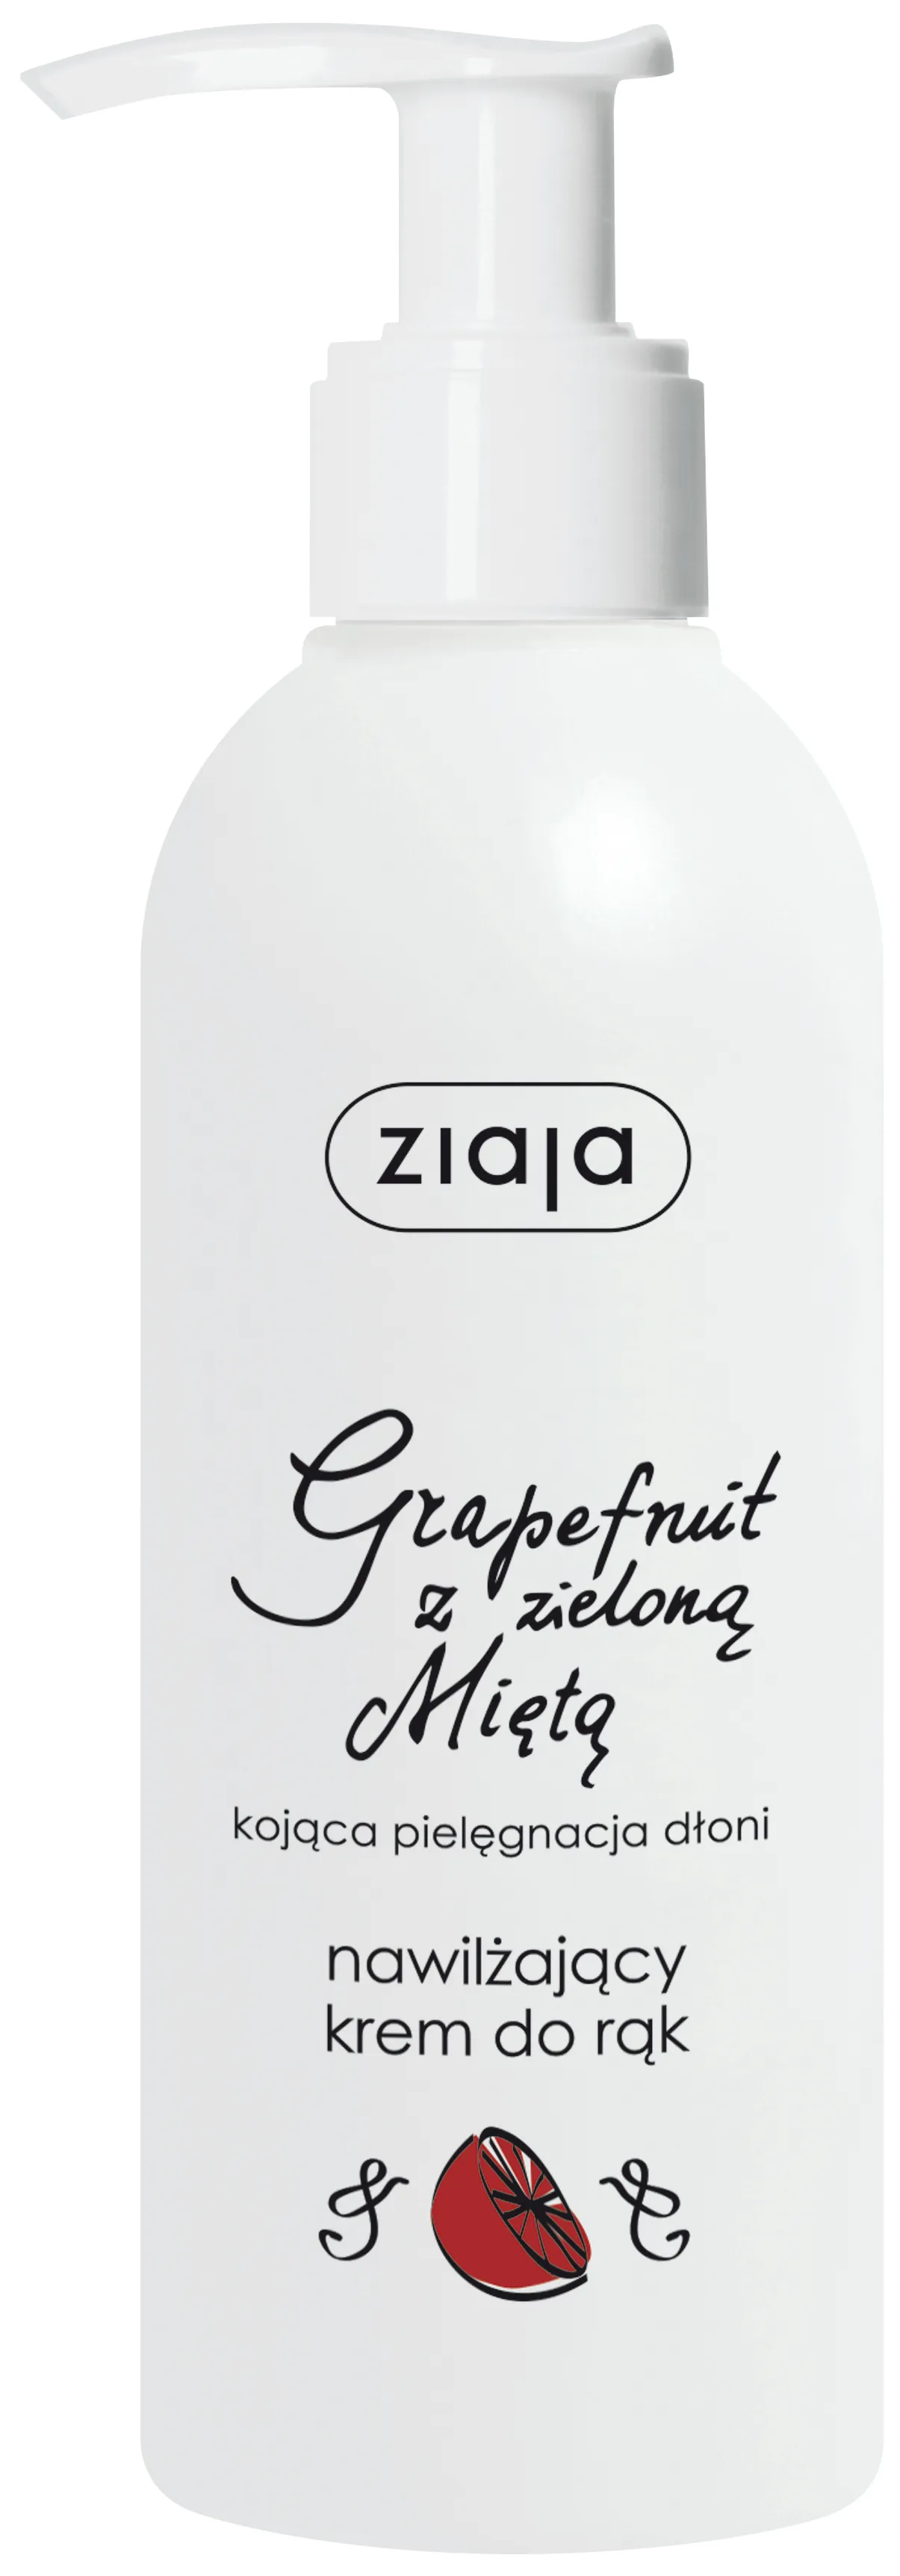 Ziaja, krem nawilżający do rąk grapefruit z zieloną miętą, 200 ml